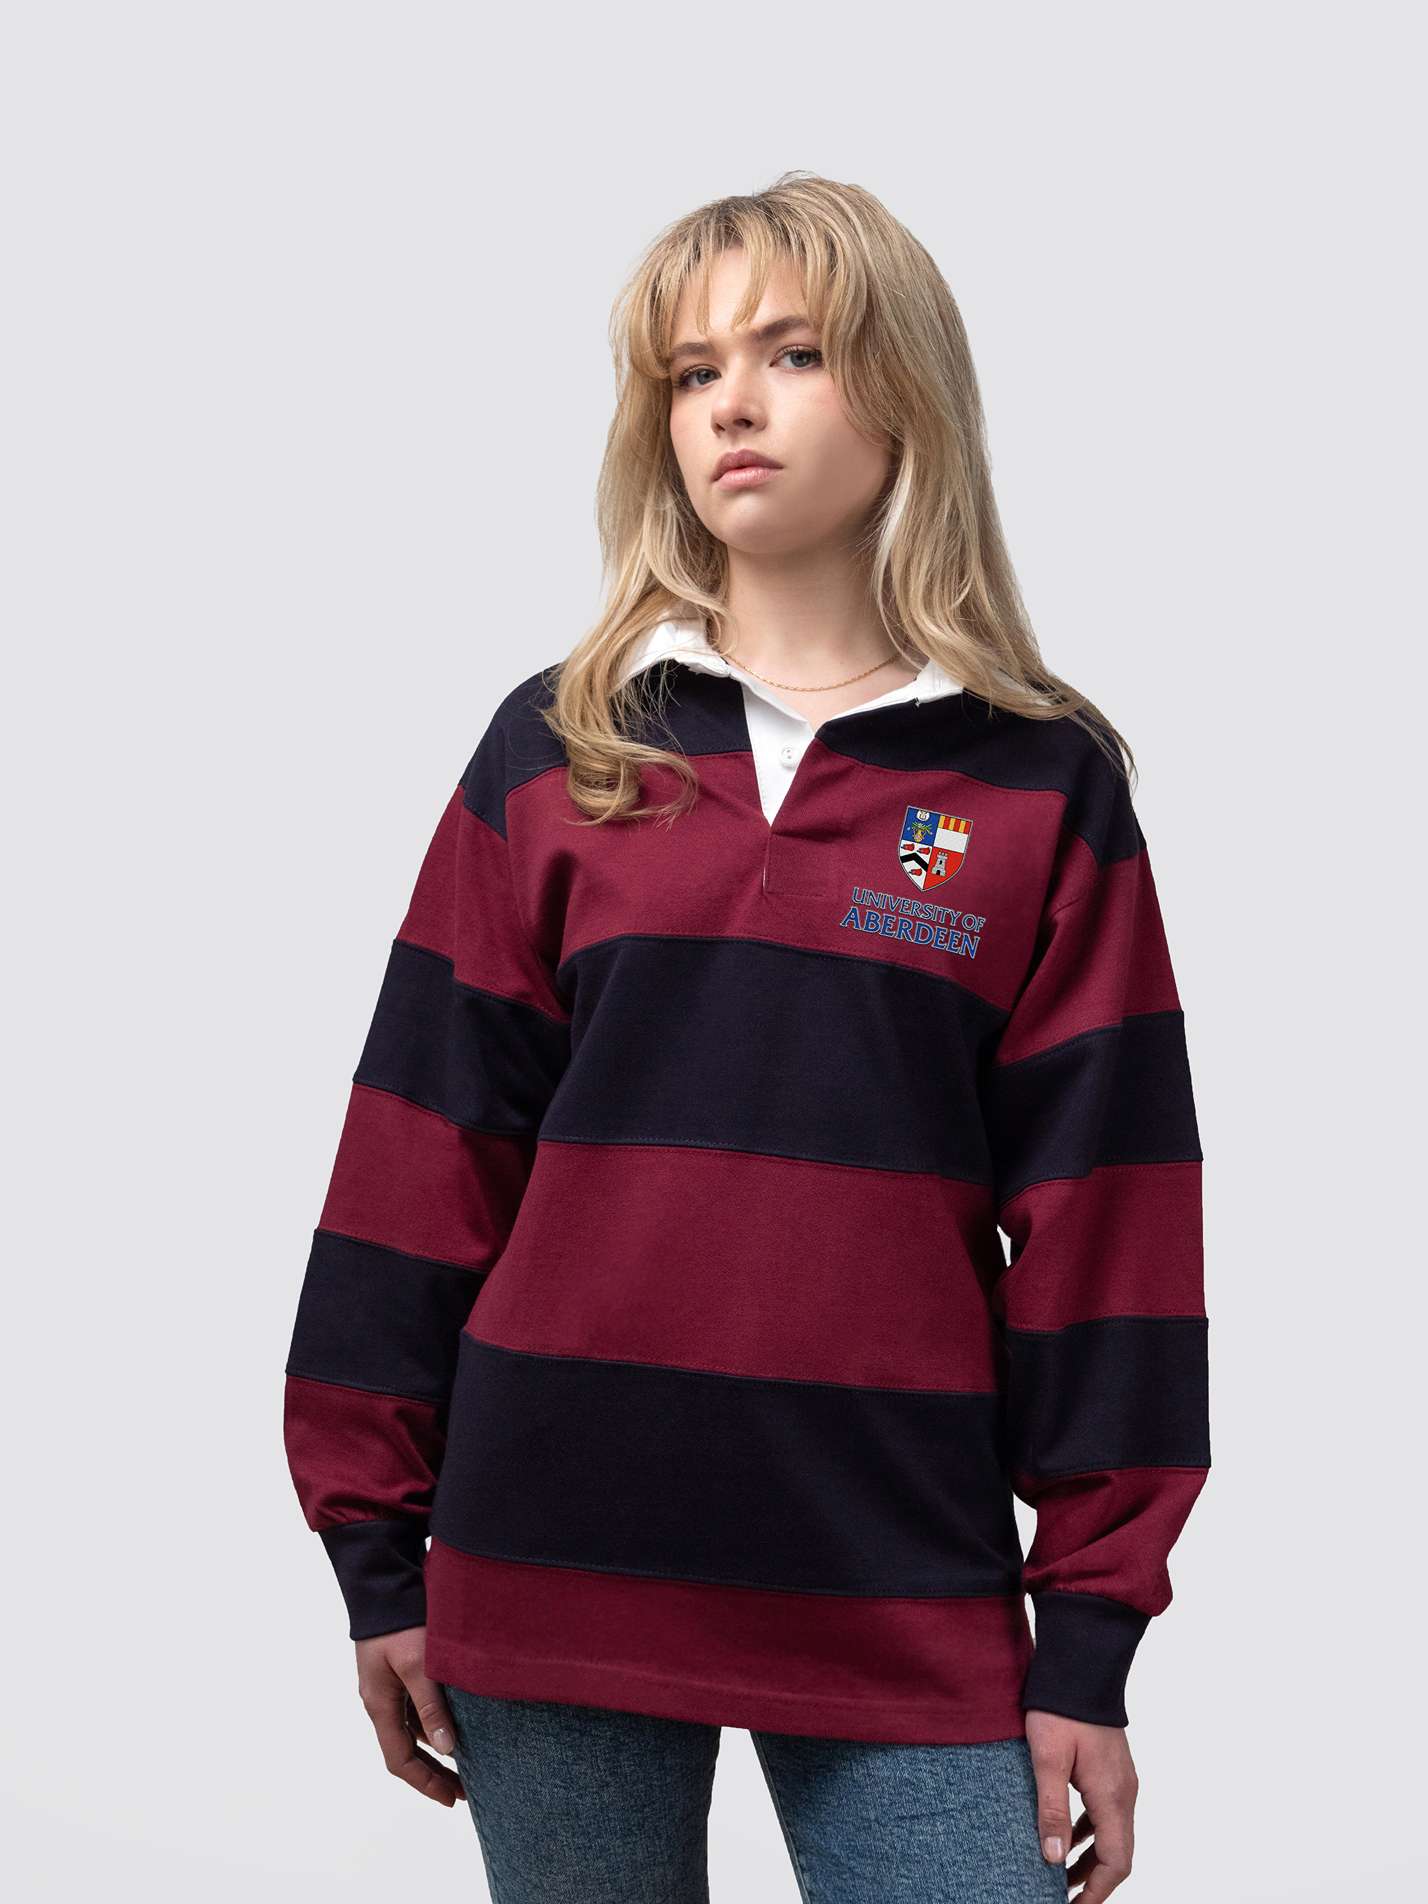 Aberdeen Athletics Unisex Striped Rugby Shirt